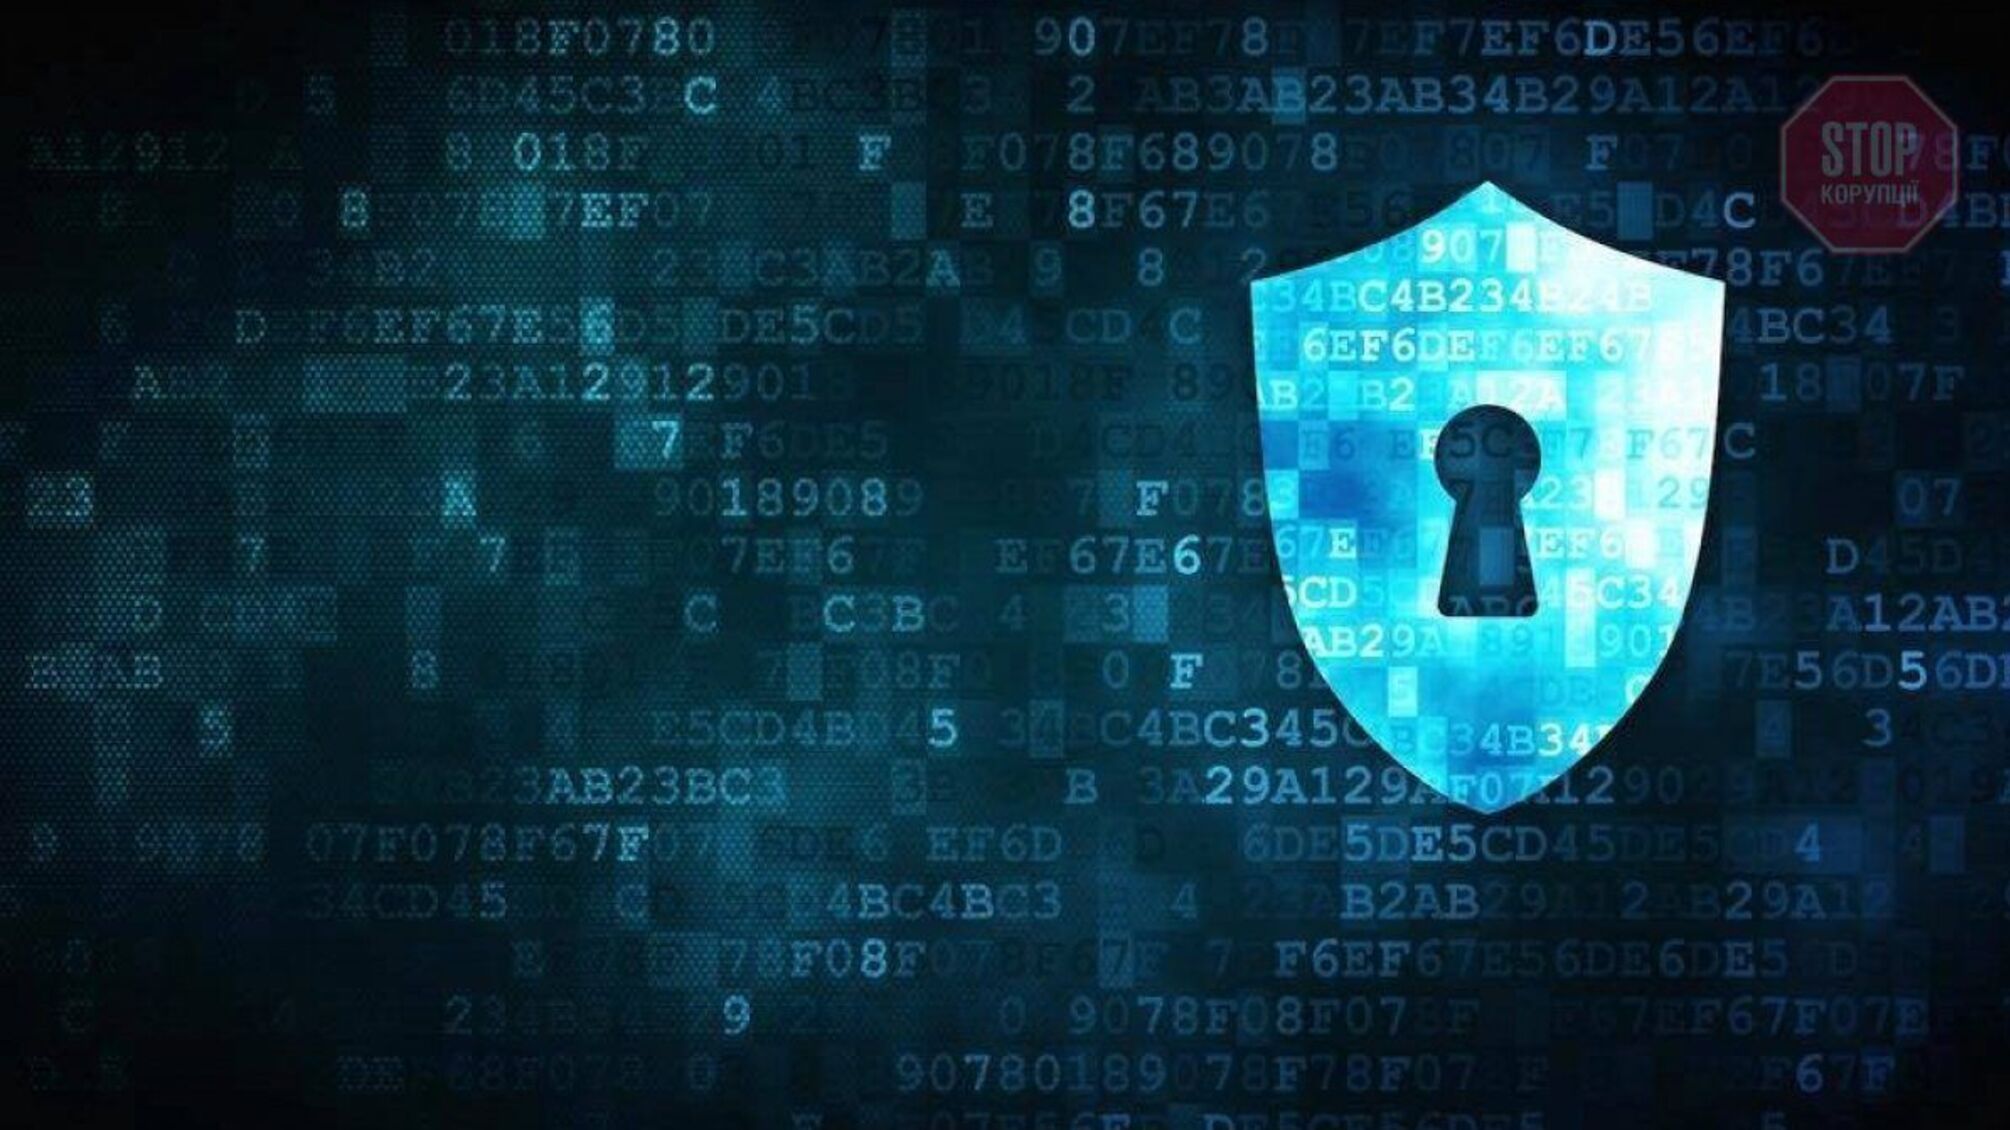 Не открывайте письма из судов: о новых атаках хакеров предупреждает Центр кибербезопасности (фото)